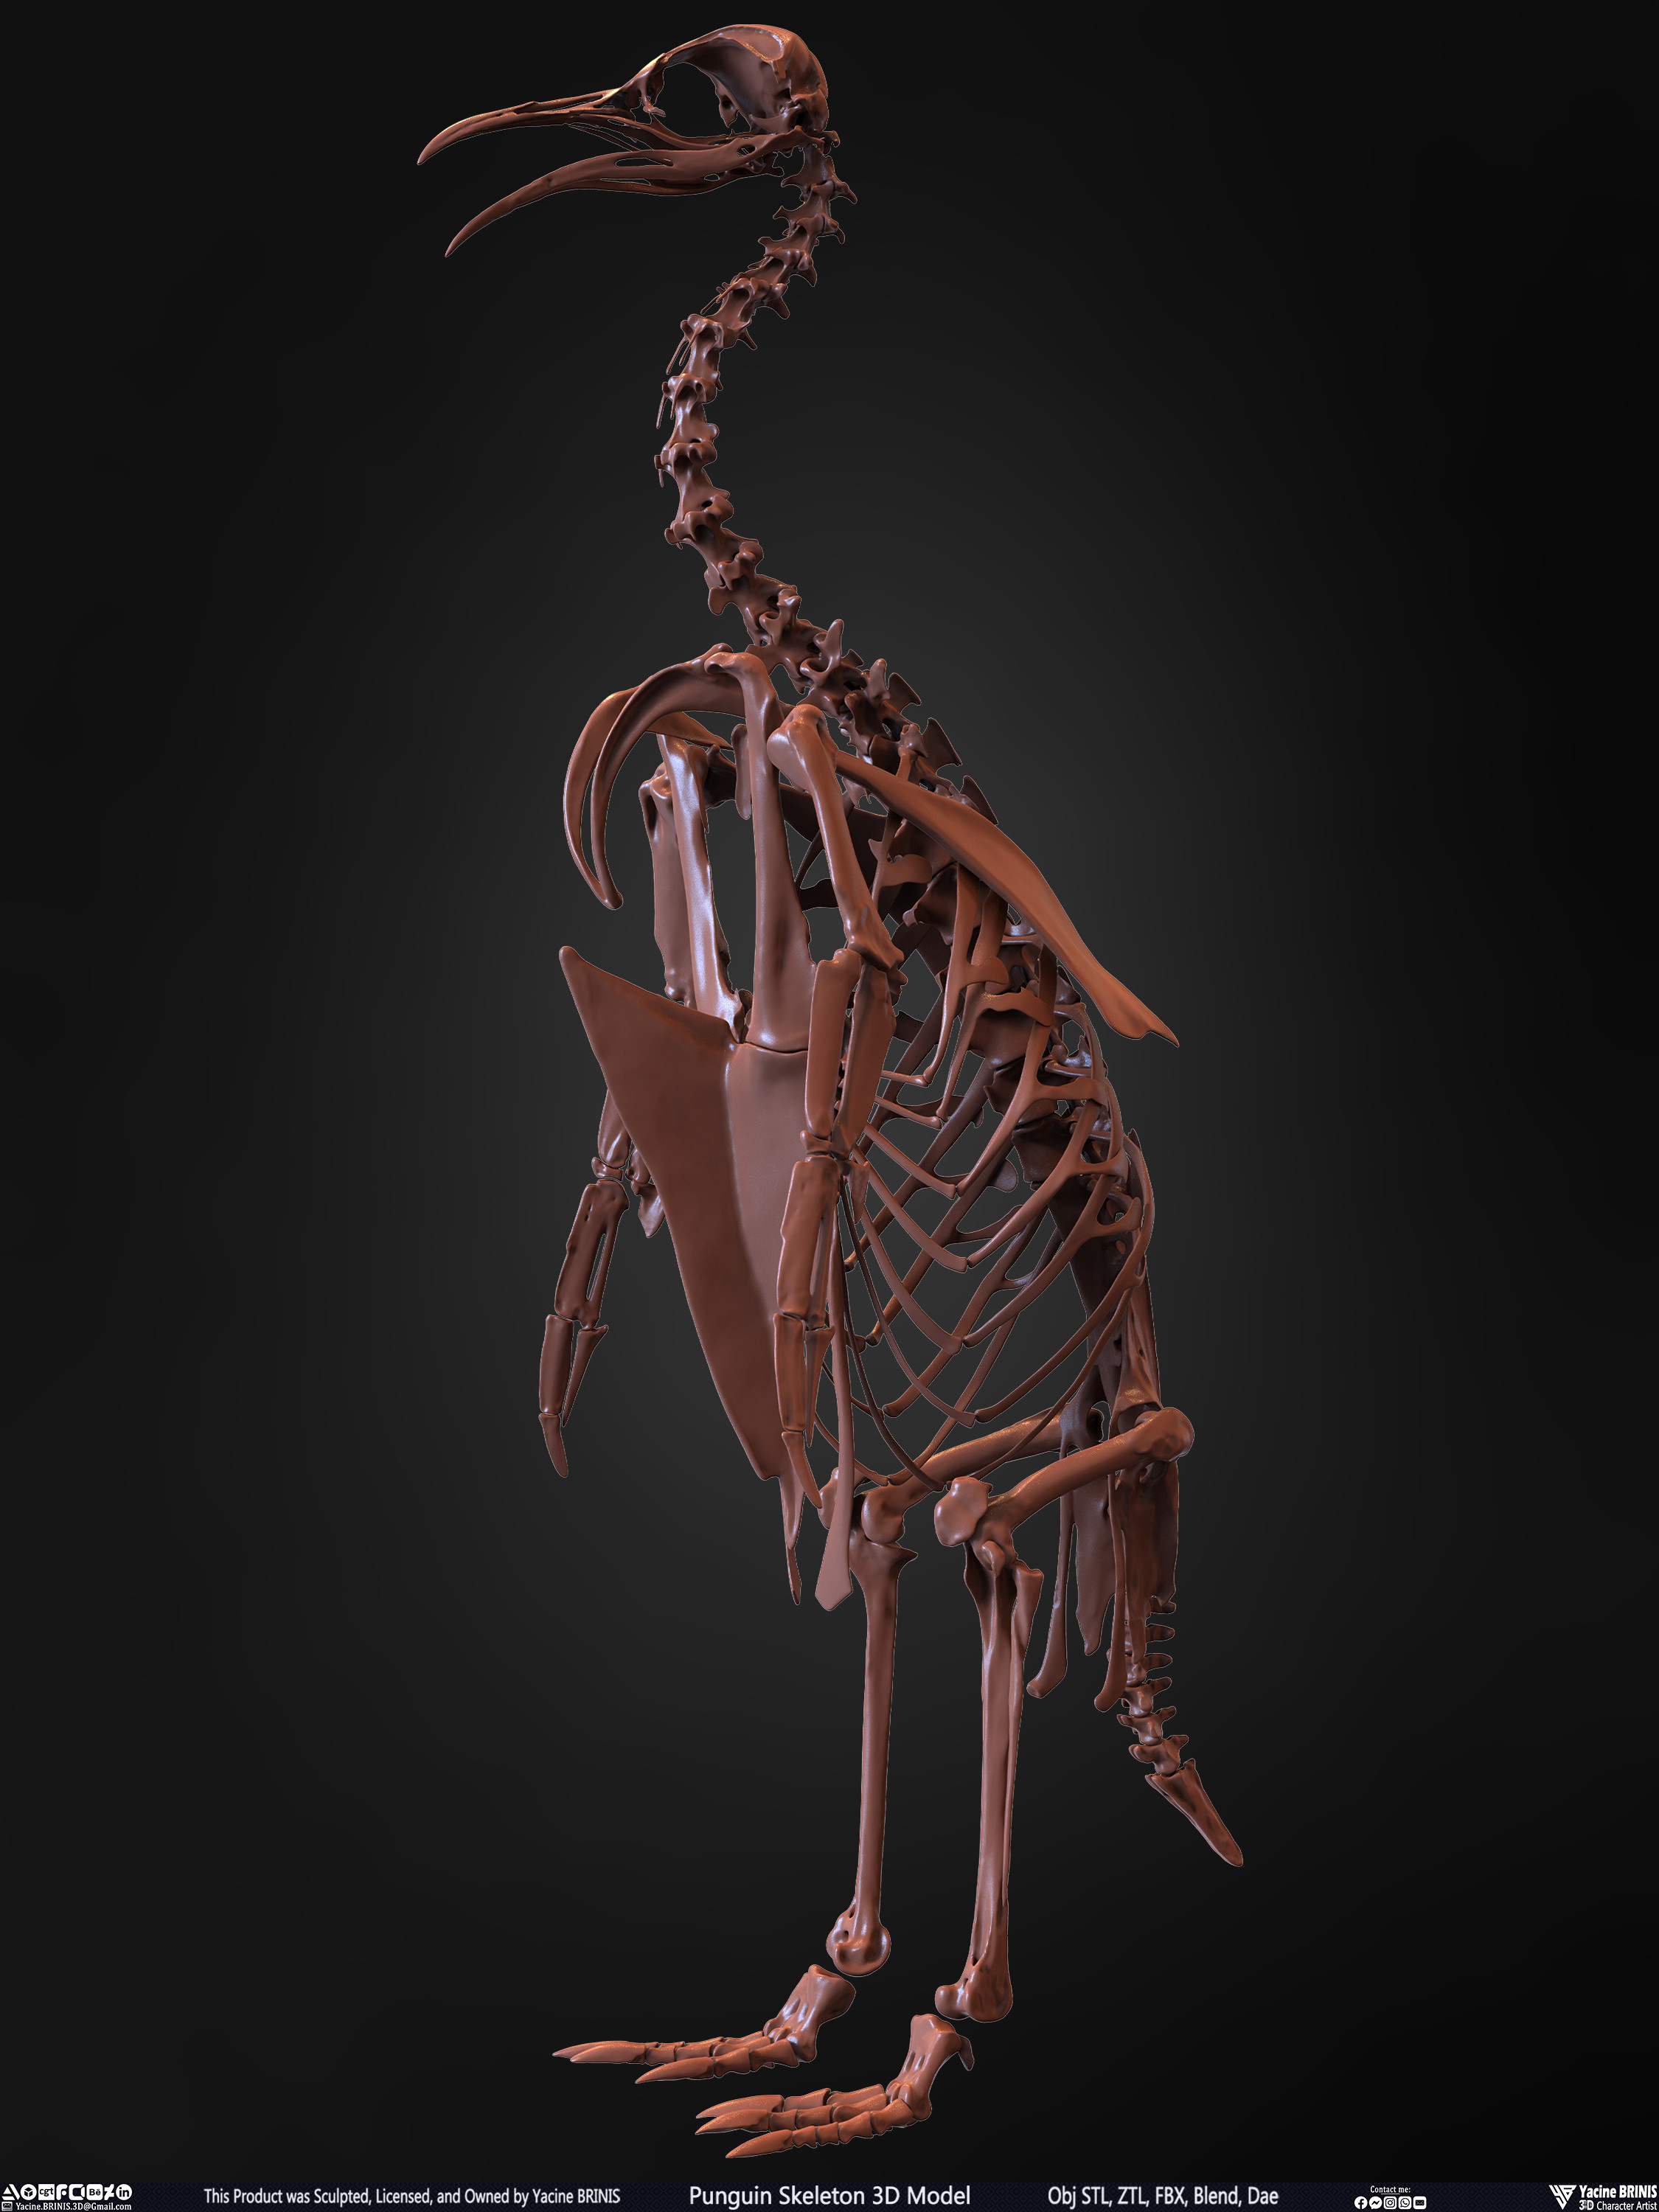 Penguin Skeleton 3D Model Sculpted by Yacine BRINIS Set 010